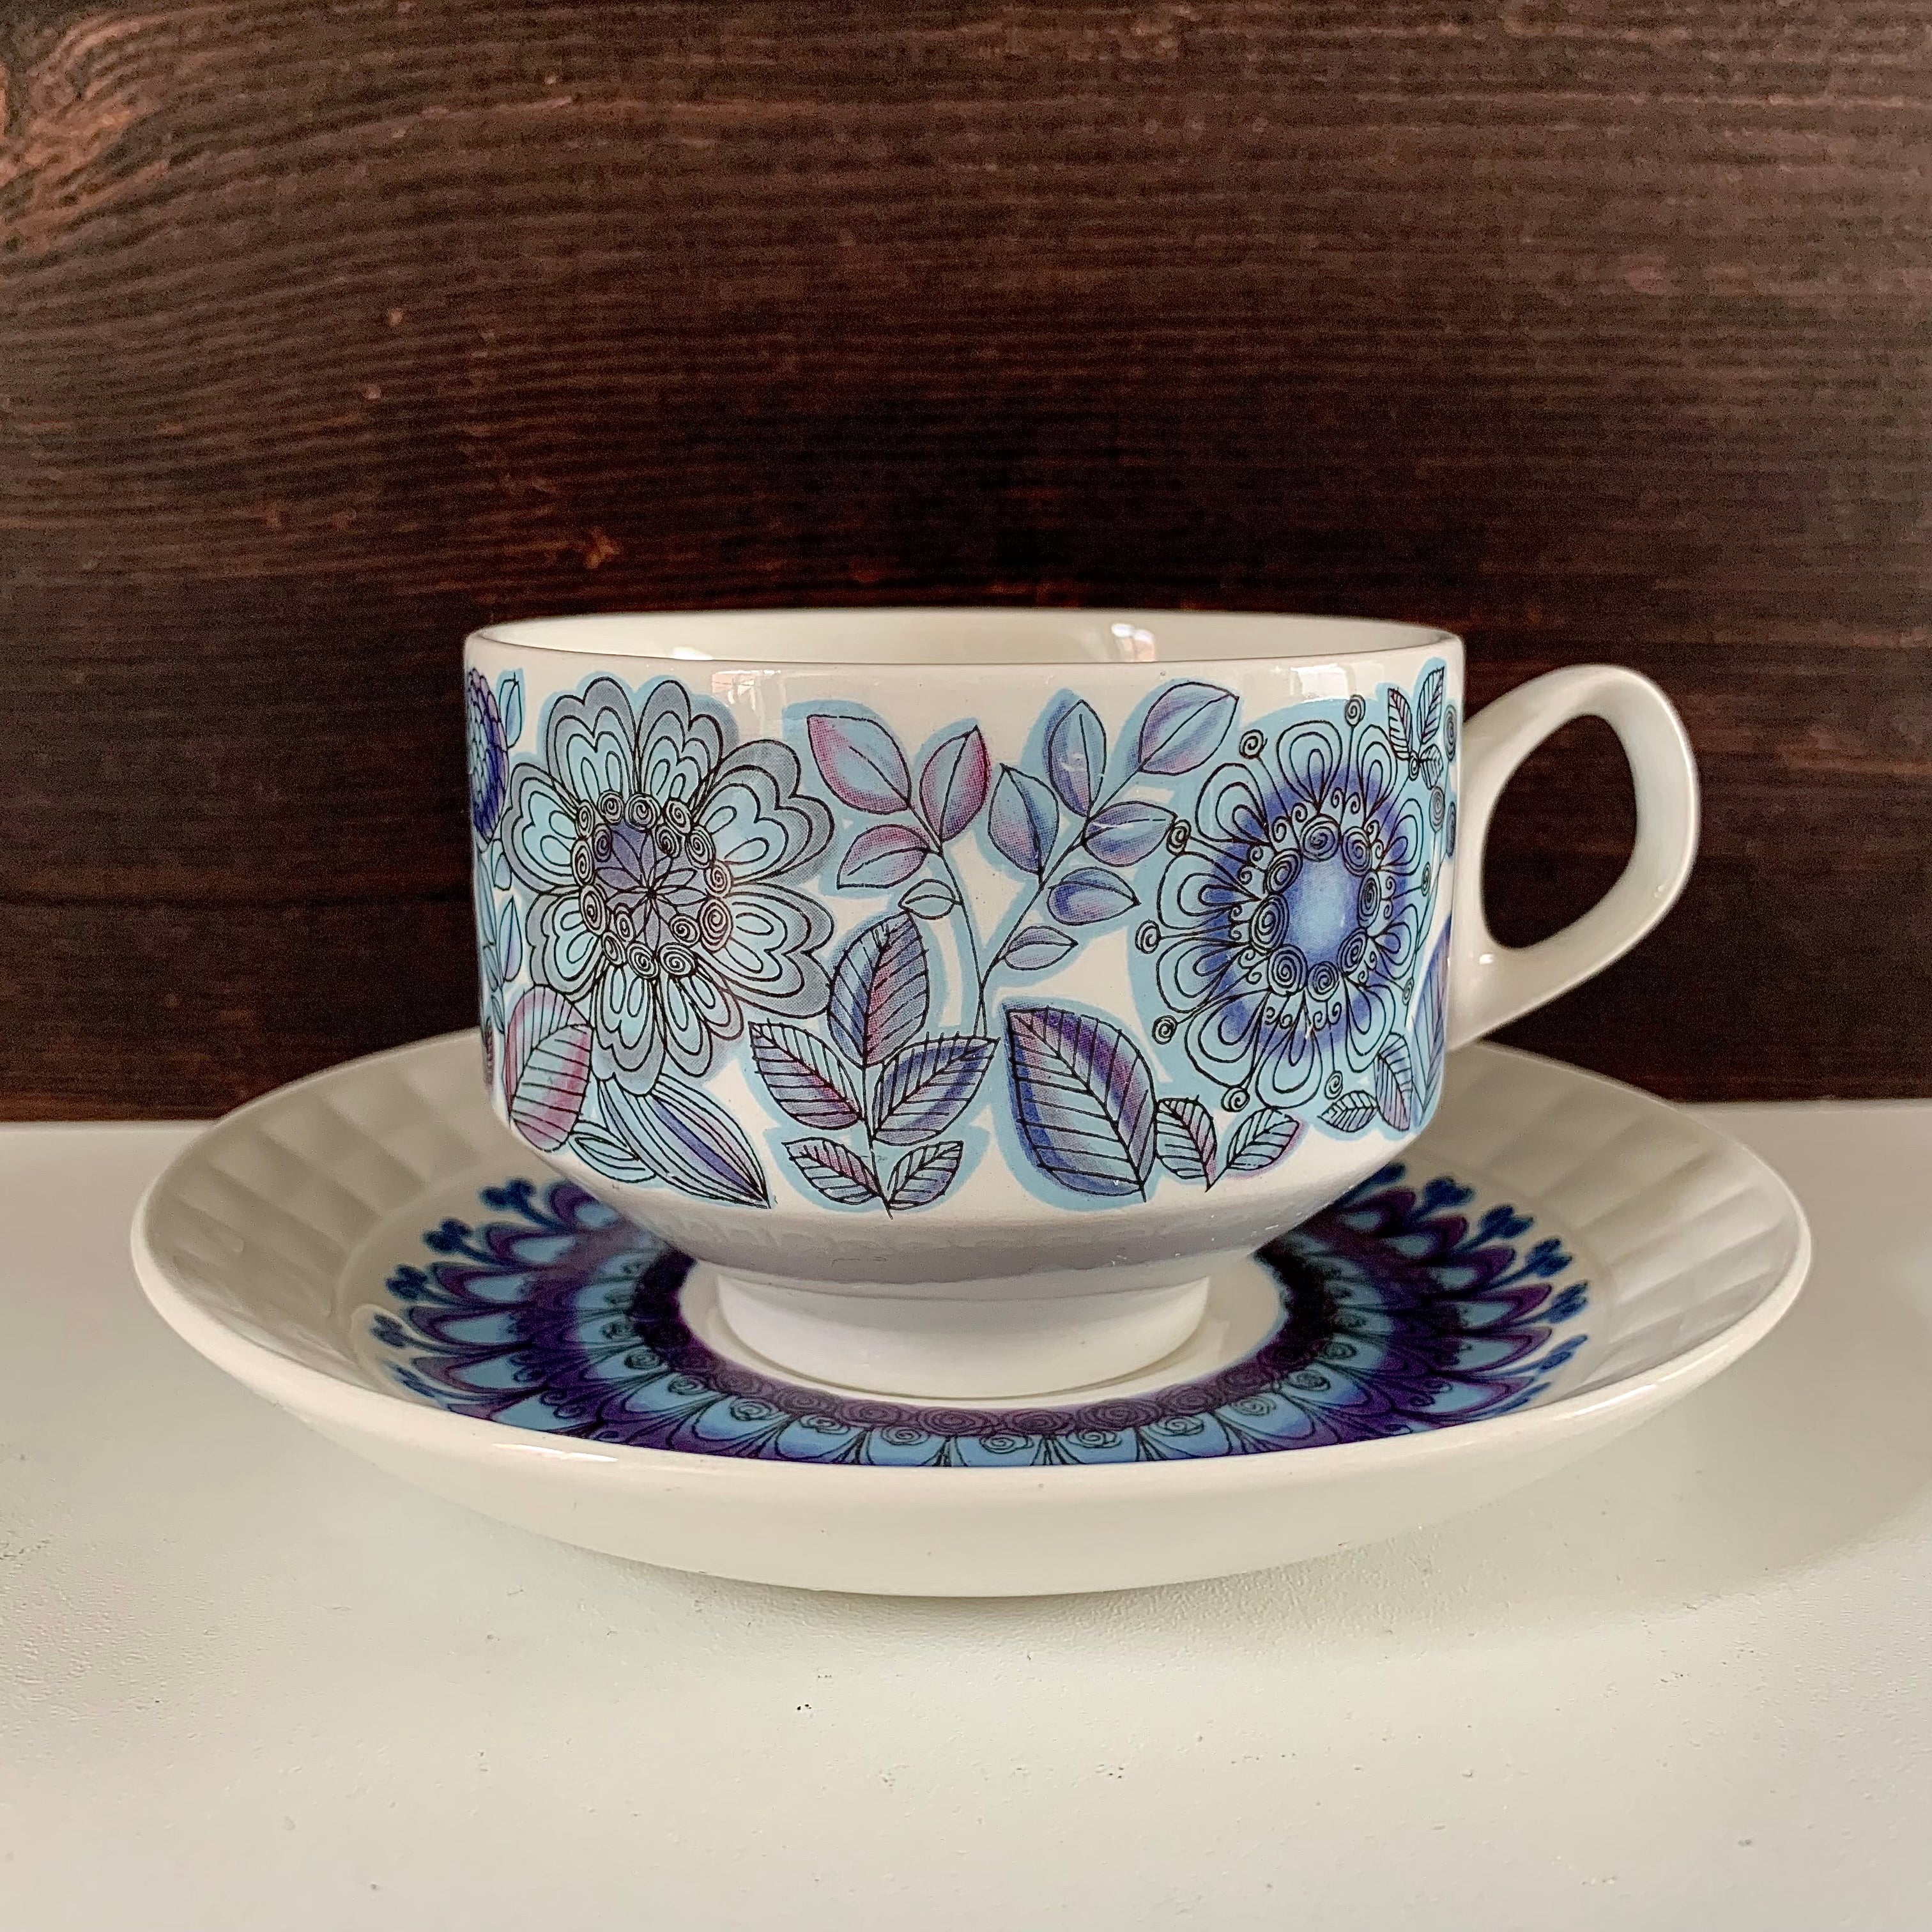 All Ceramics – Scandiwegians